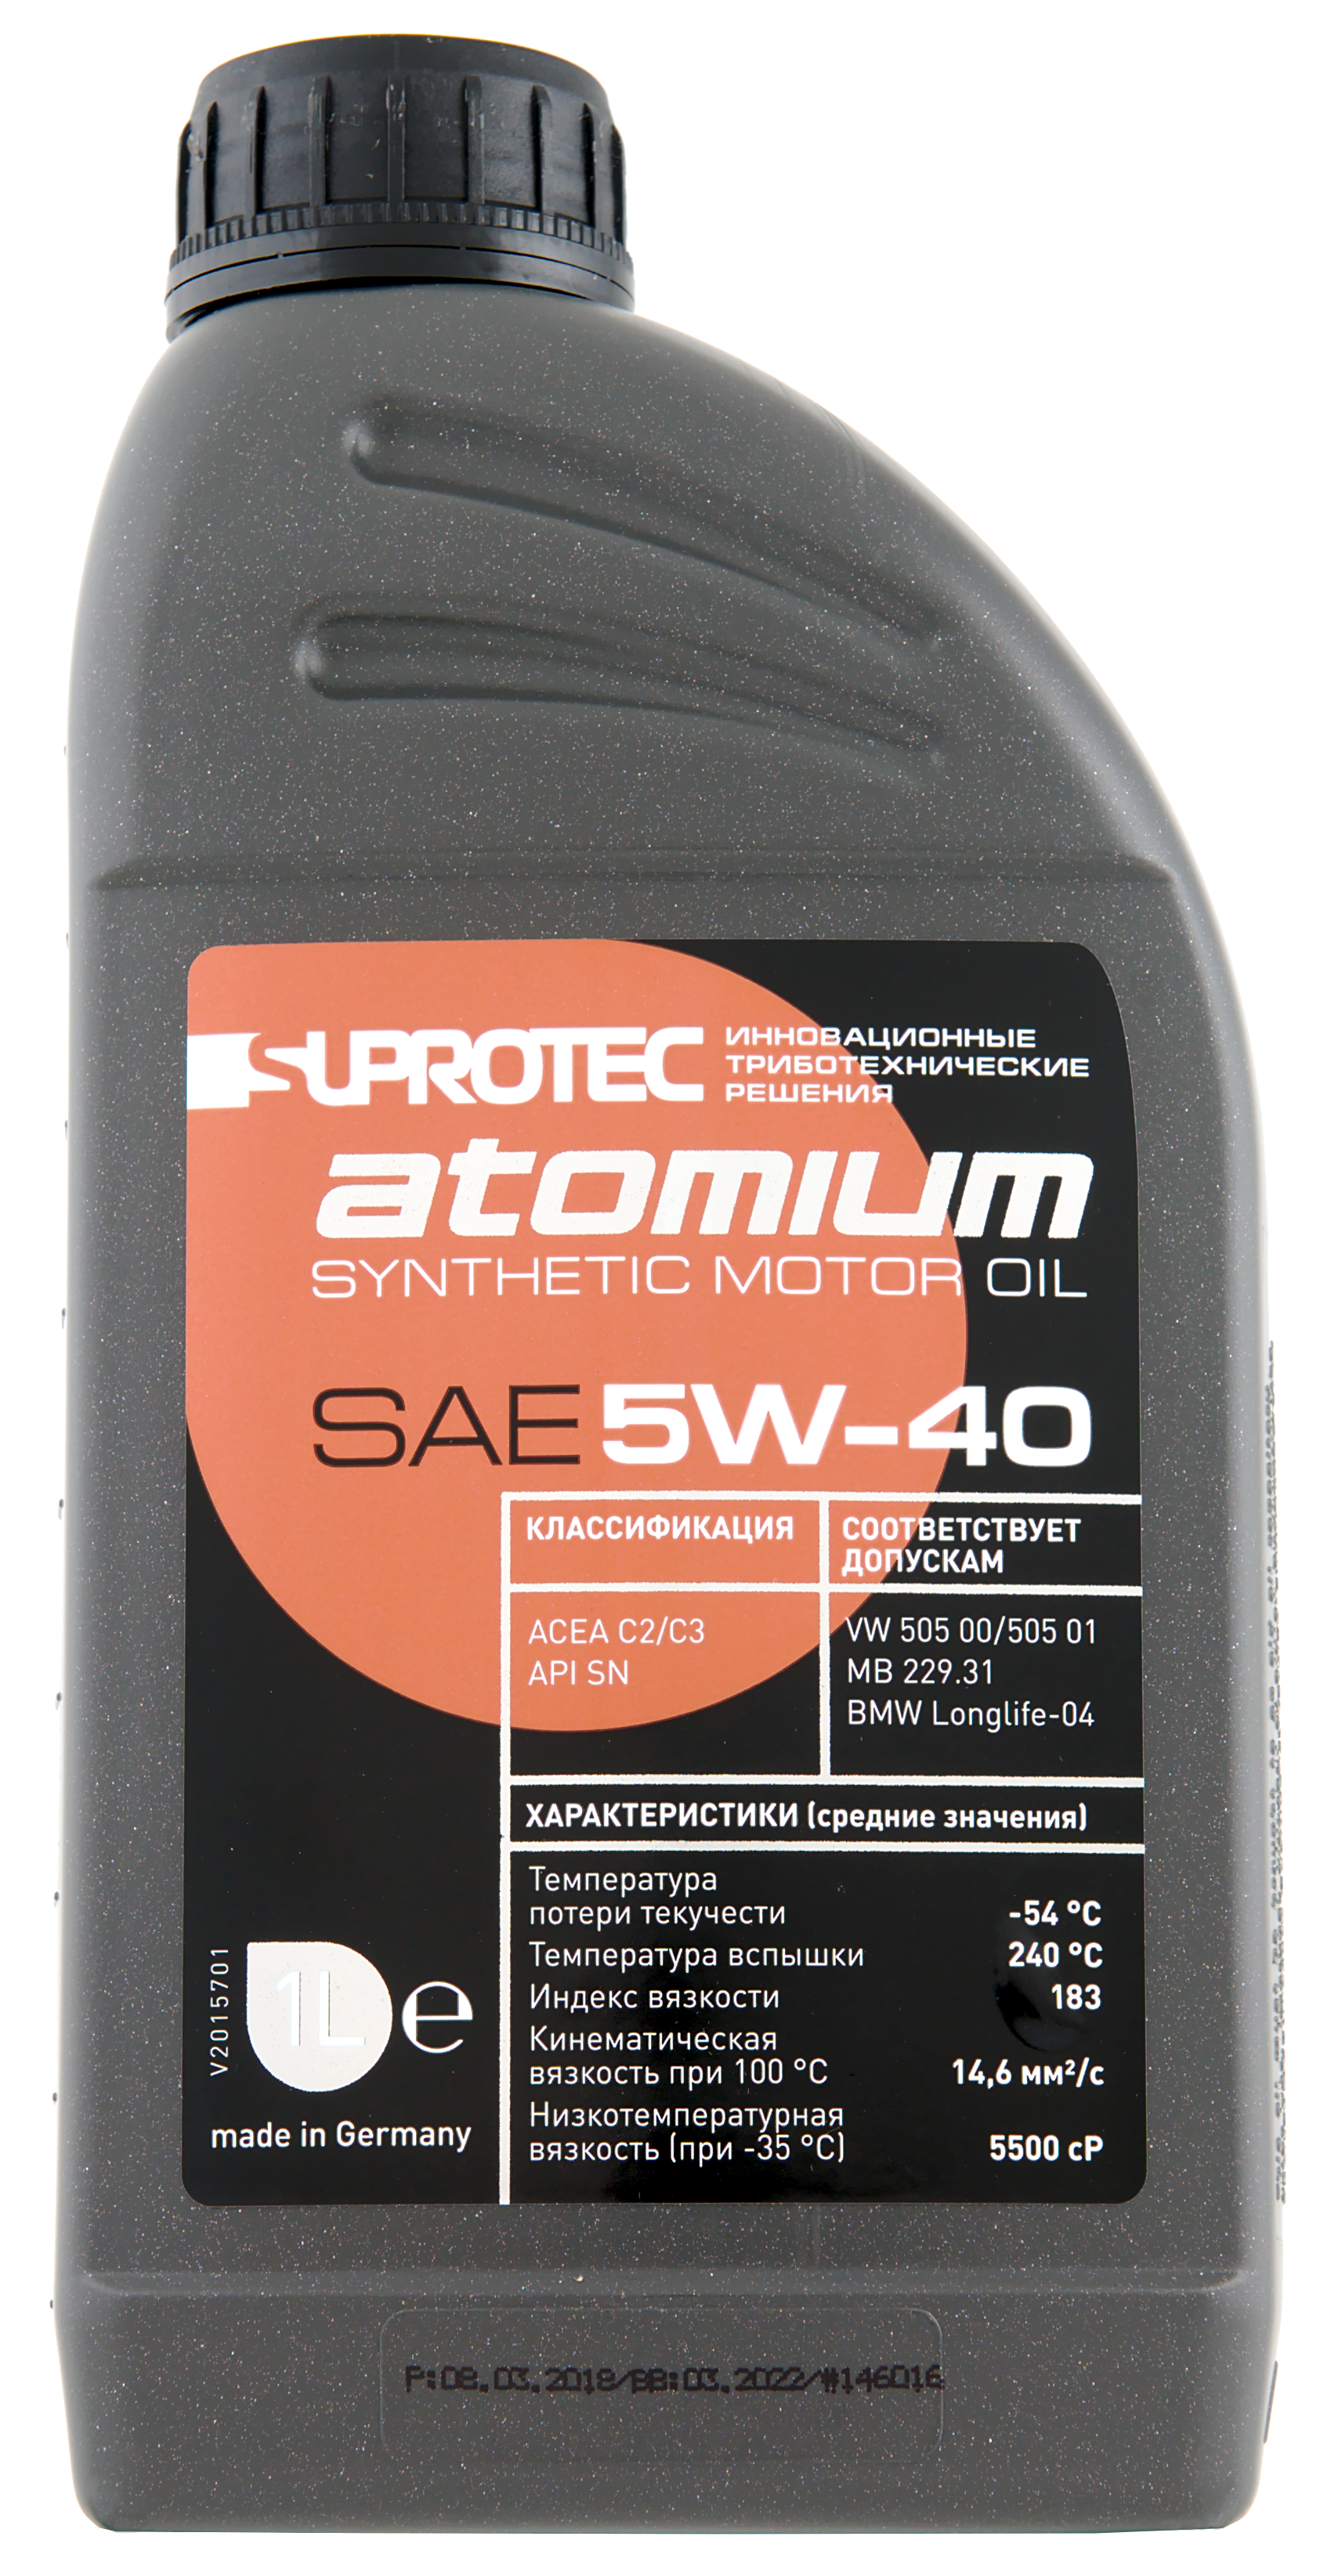 Масло супротек 5w40. Suprotec Atomium 5w-40. Моторное масло suprotec Atomium 5w-40. Suprotec 5w30 Atomium. Супротек Атомиум 5/40.